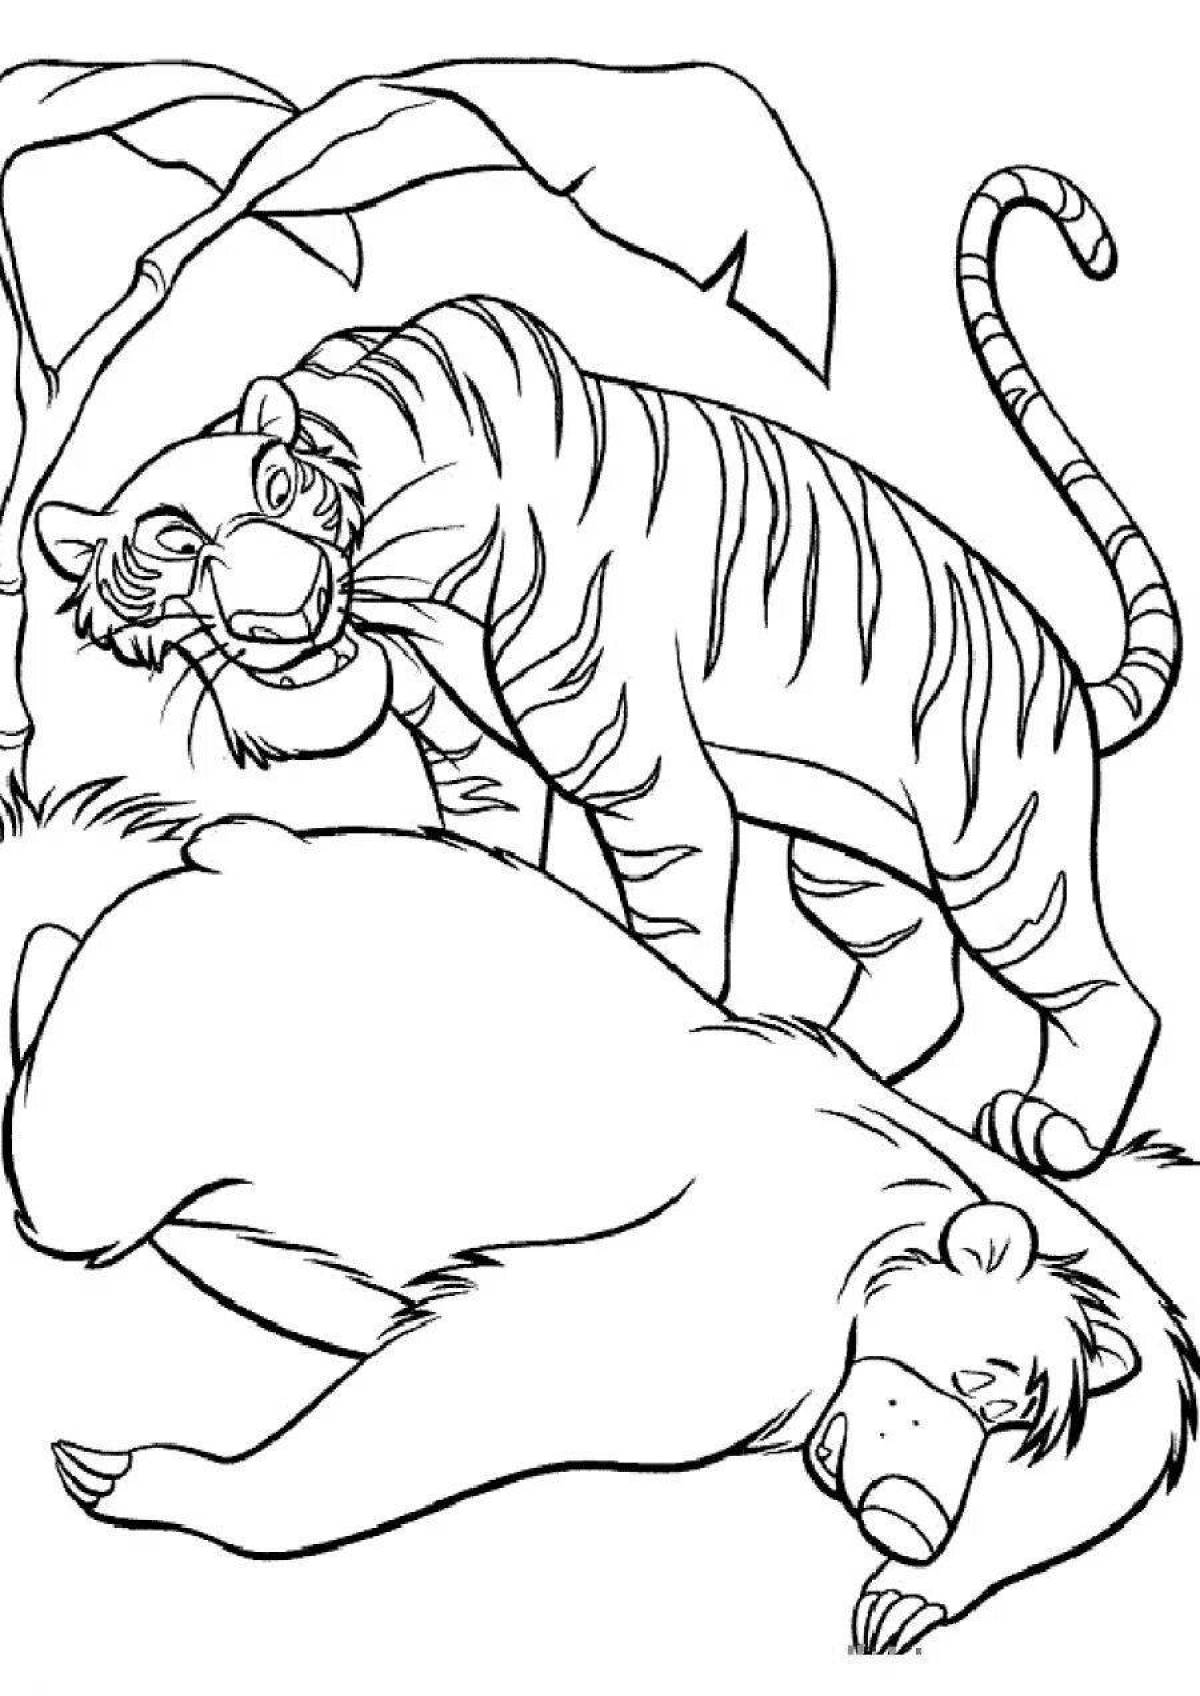 Coloring page striking tiger sherkhan